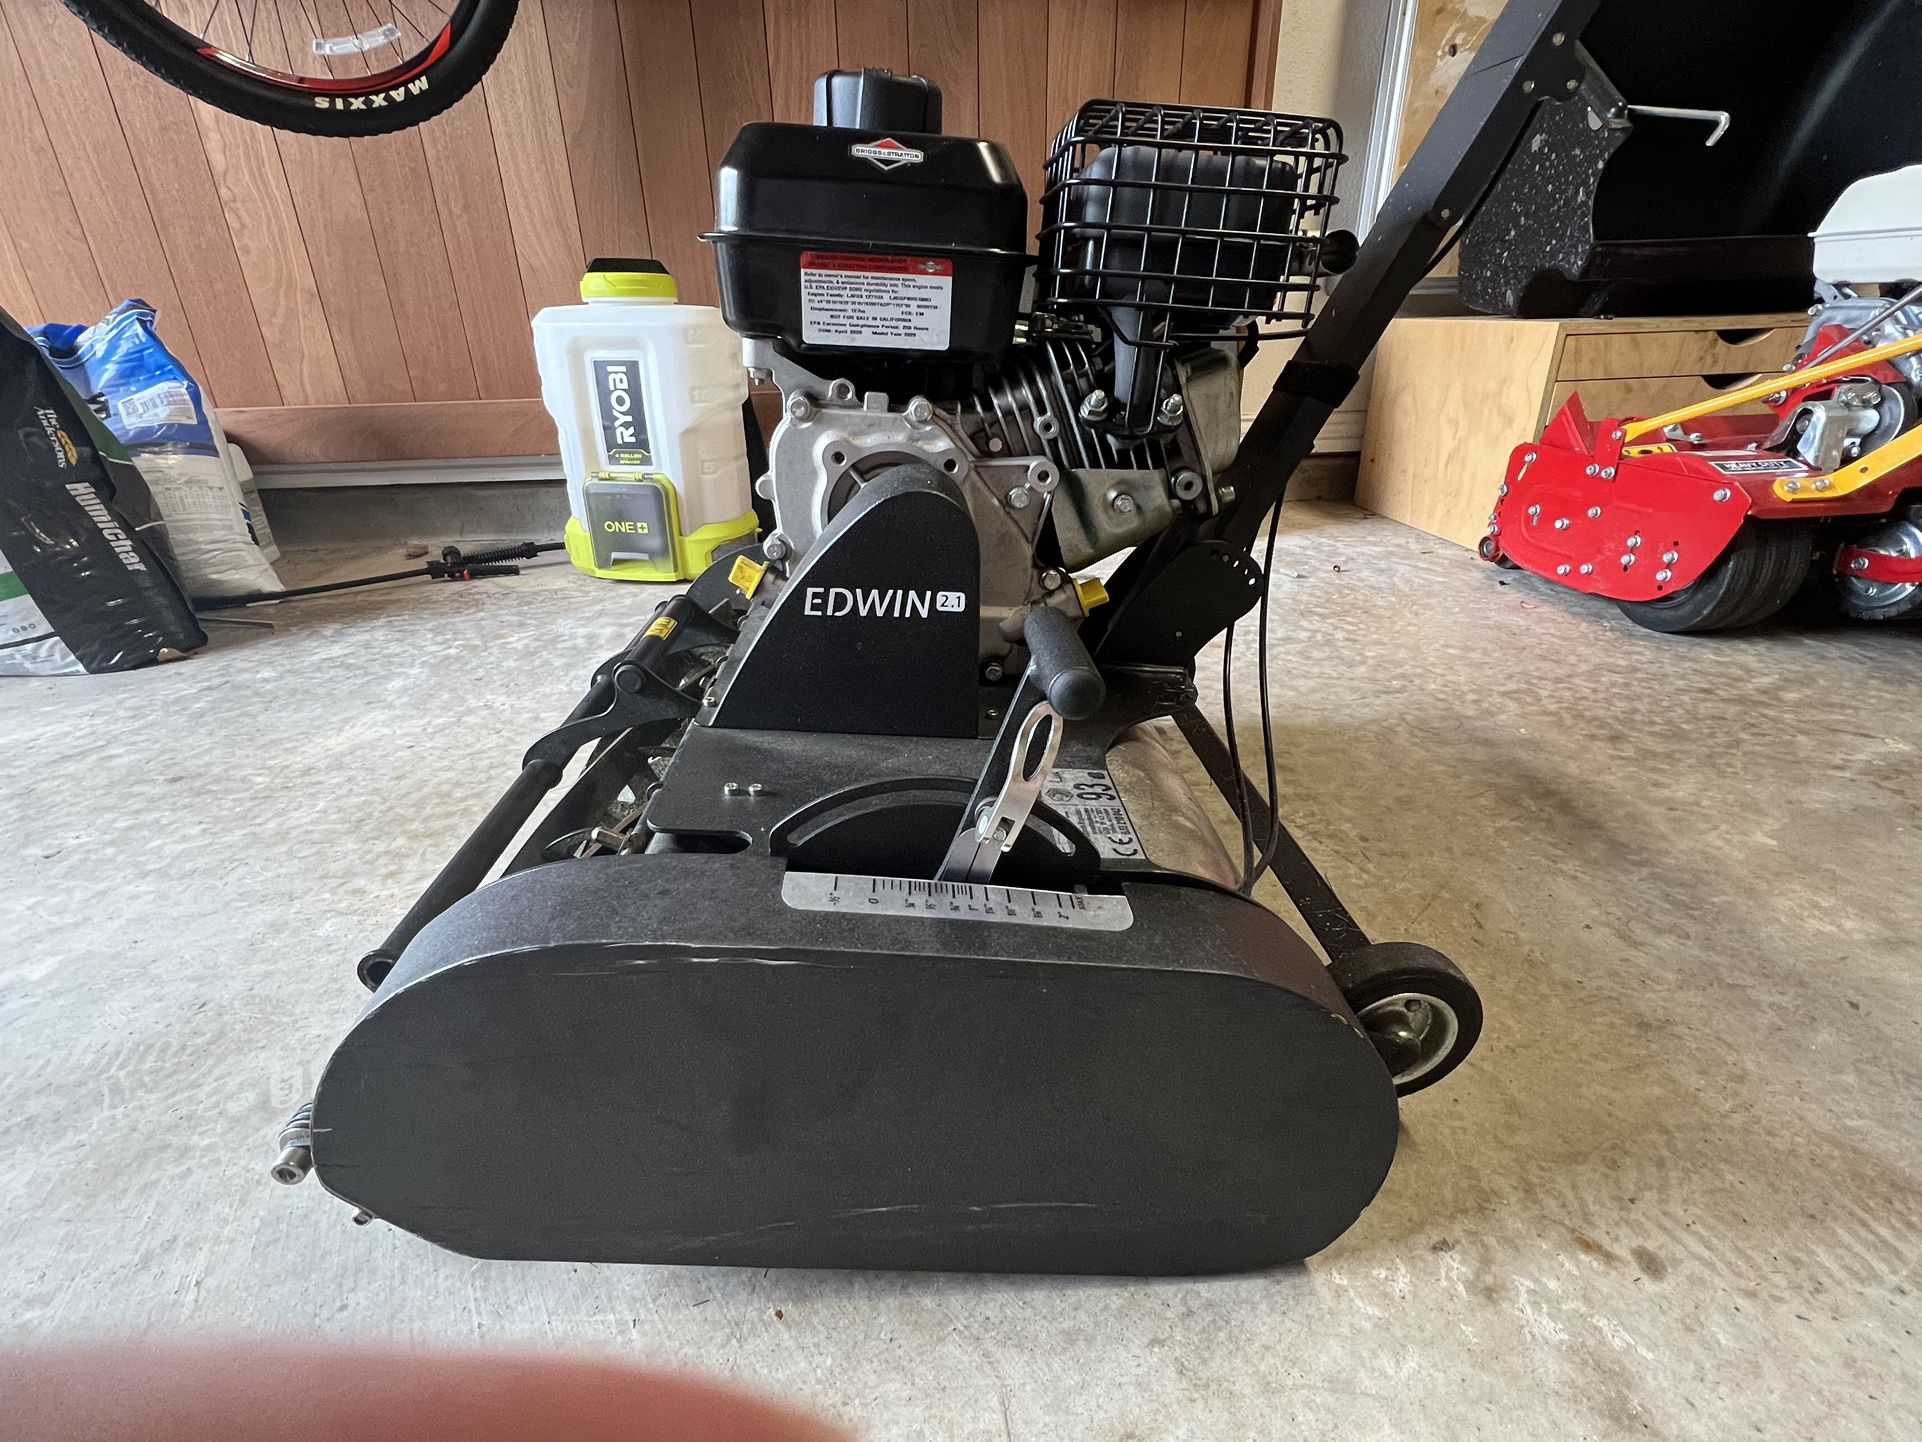 Swardman Edwin 2.1 45 Reel Mower for Sale in Katy, TX - OfferUp